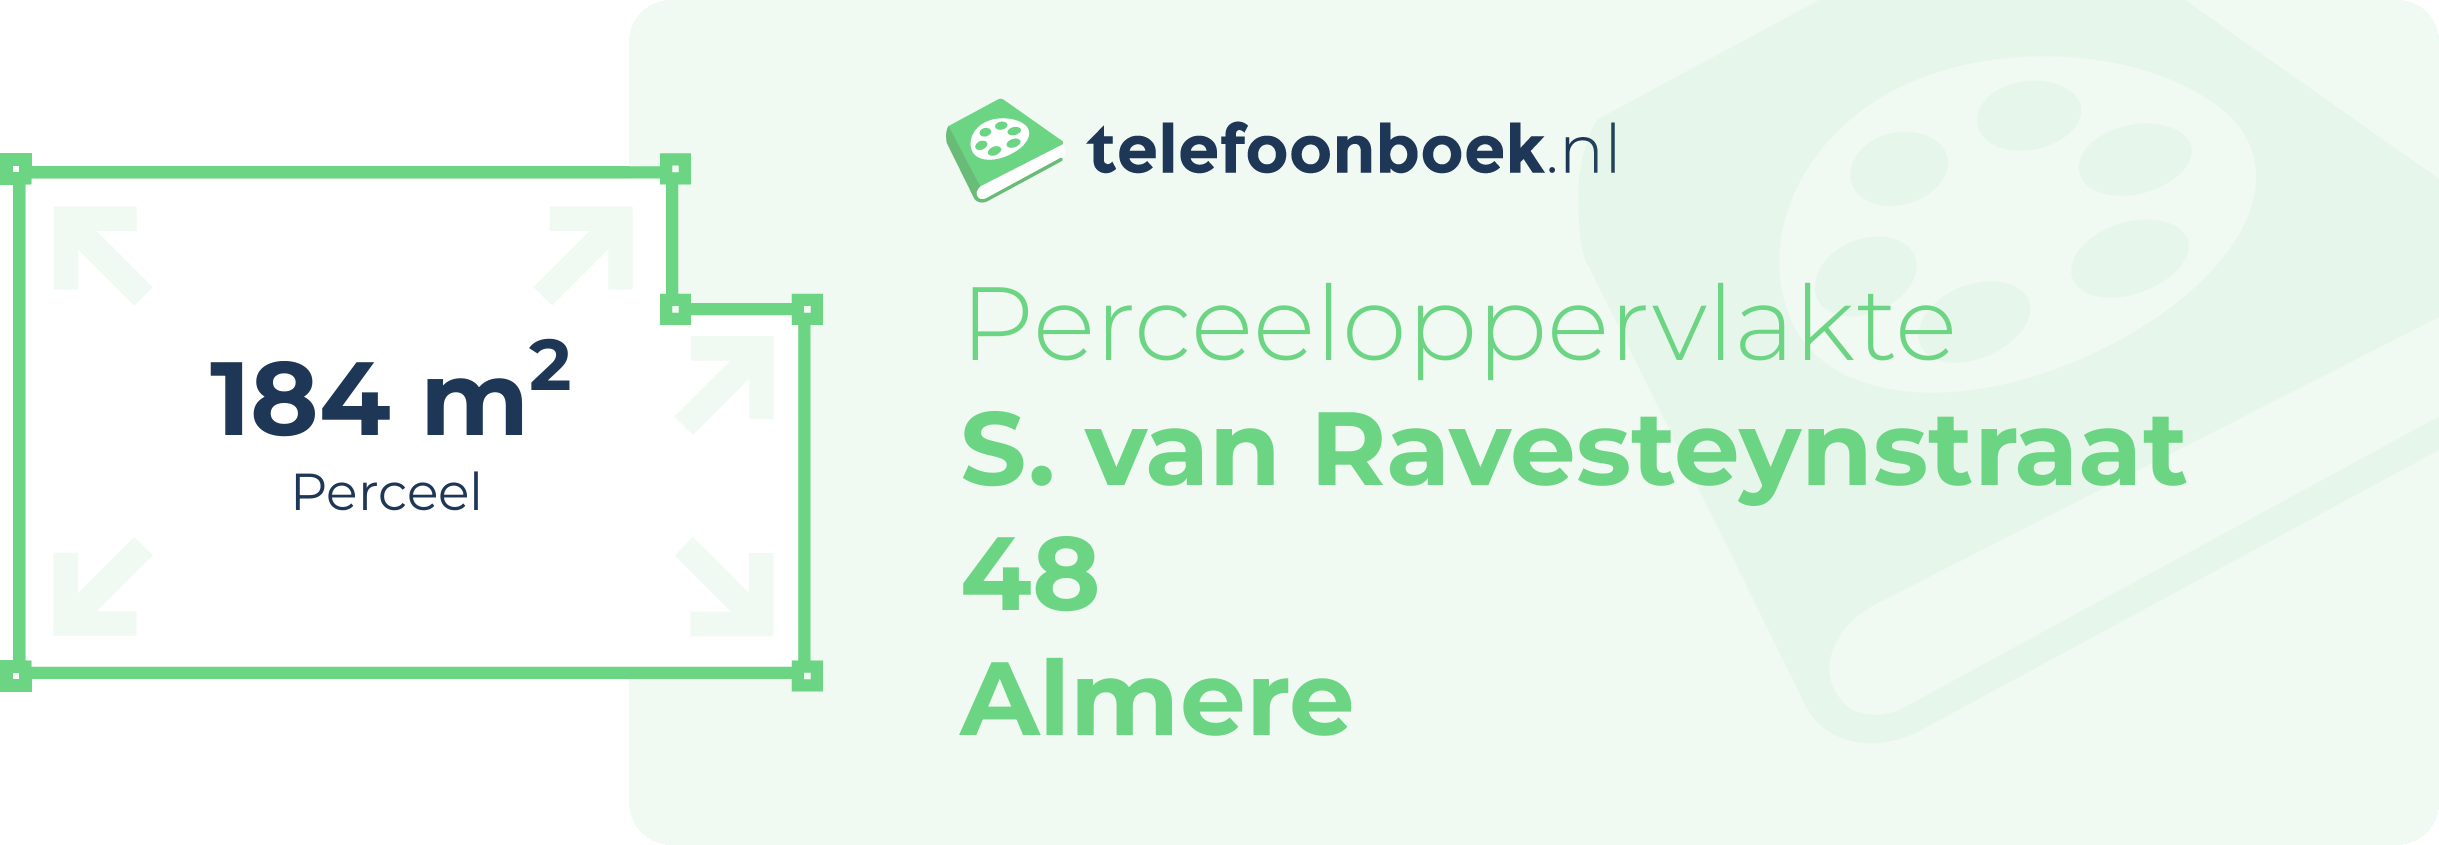 Perceeloppervlakte S. Van Ravesteynstraat 48 Almere